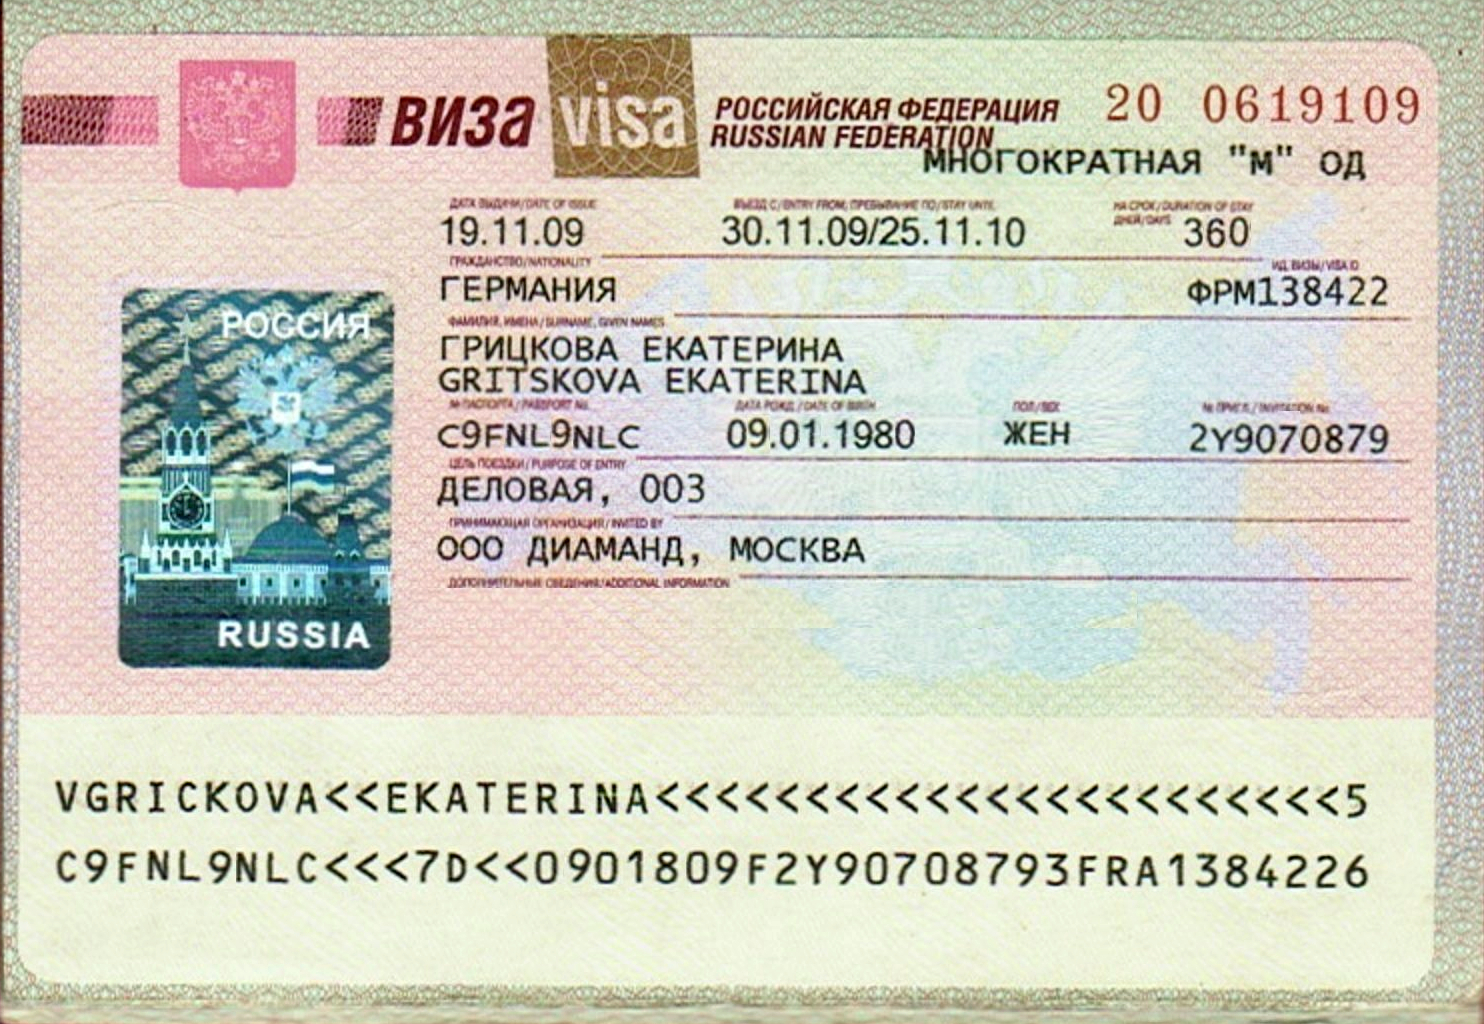 Приказ мид россии от 21 декабря 2020 г. № 23235 “об утверждении перечня целей поездок, используемого при оформлении и выдаче виз иностранным гражданам”